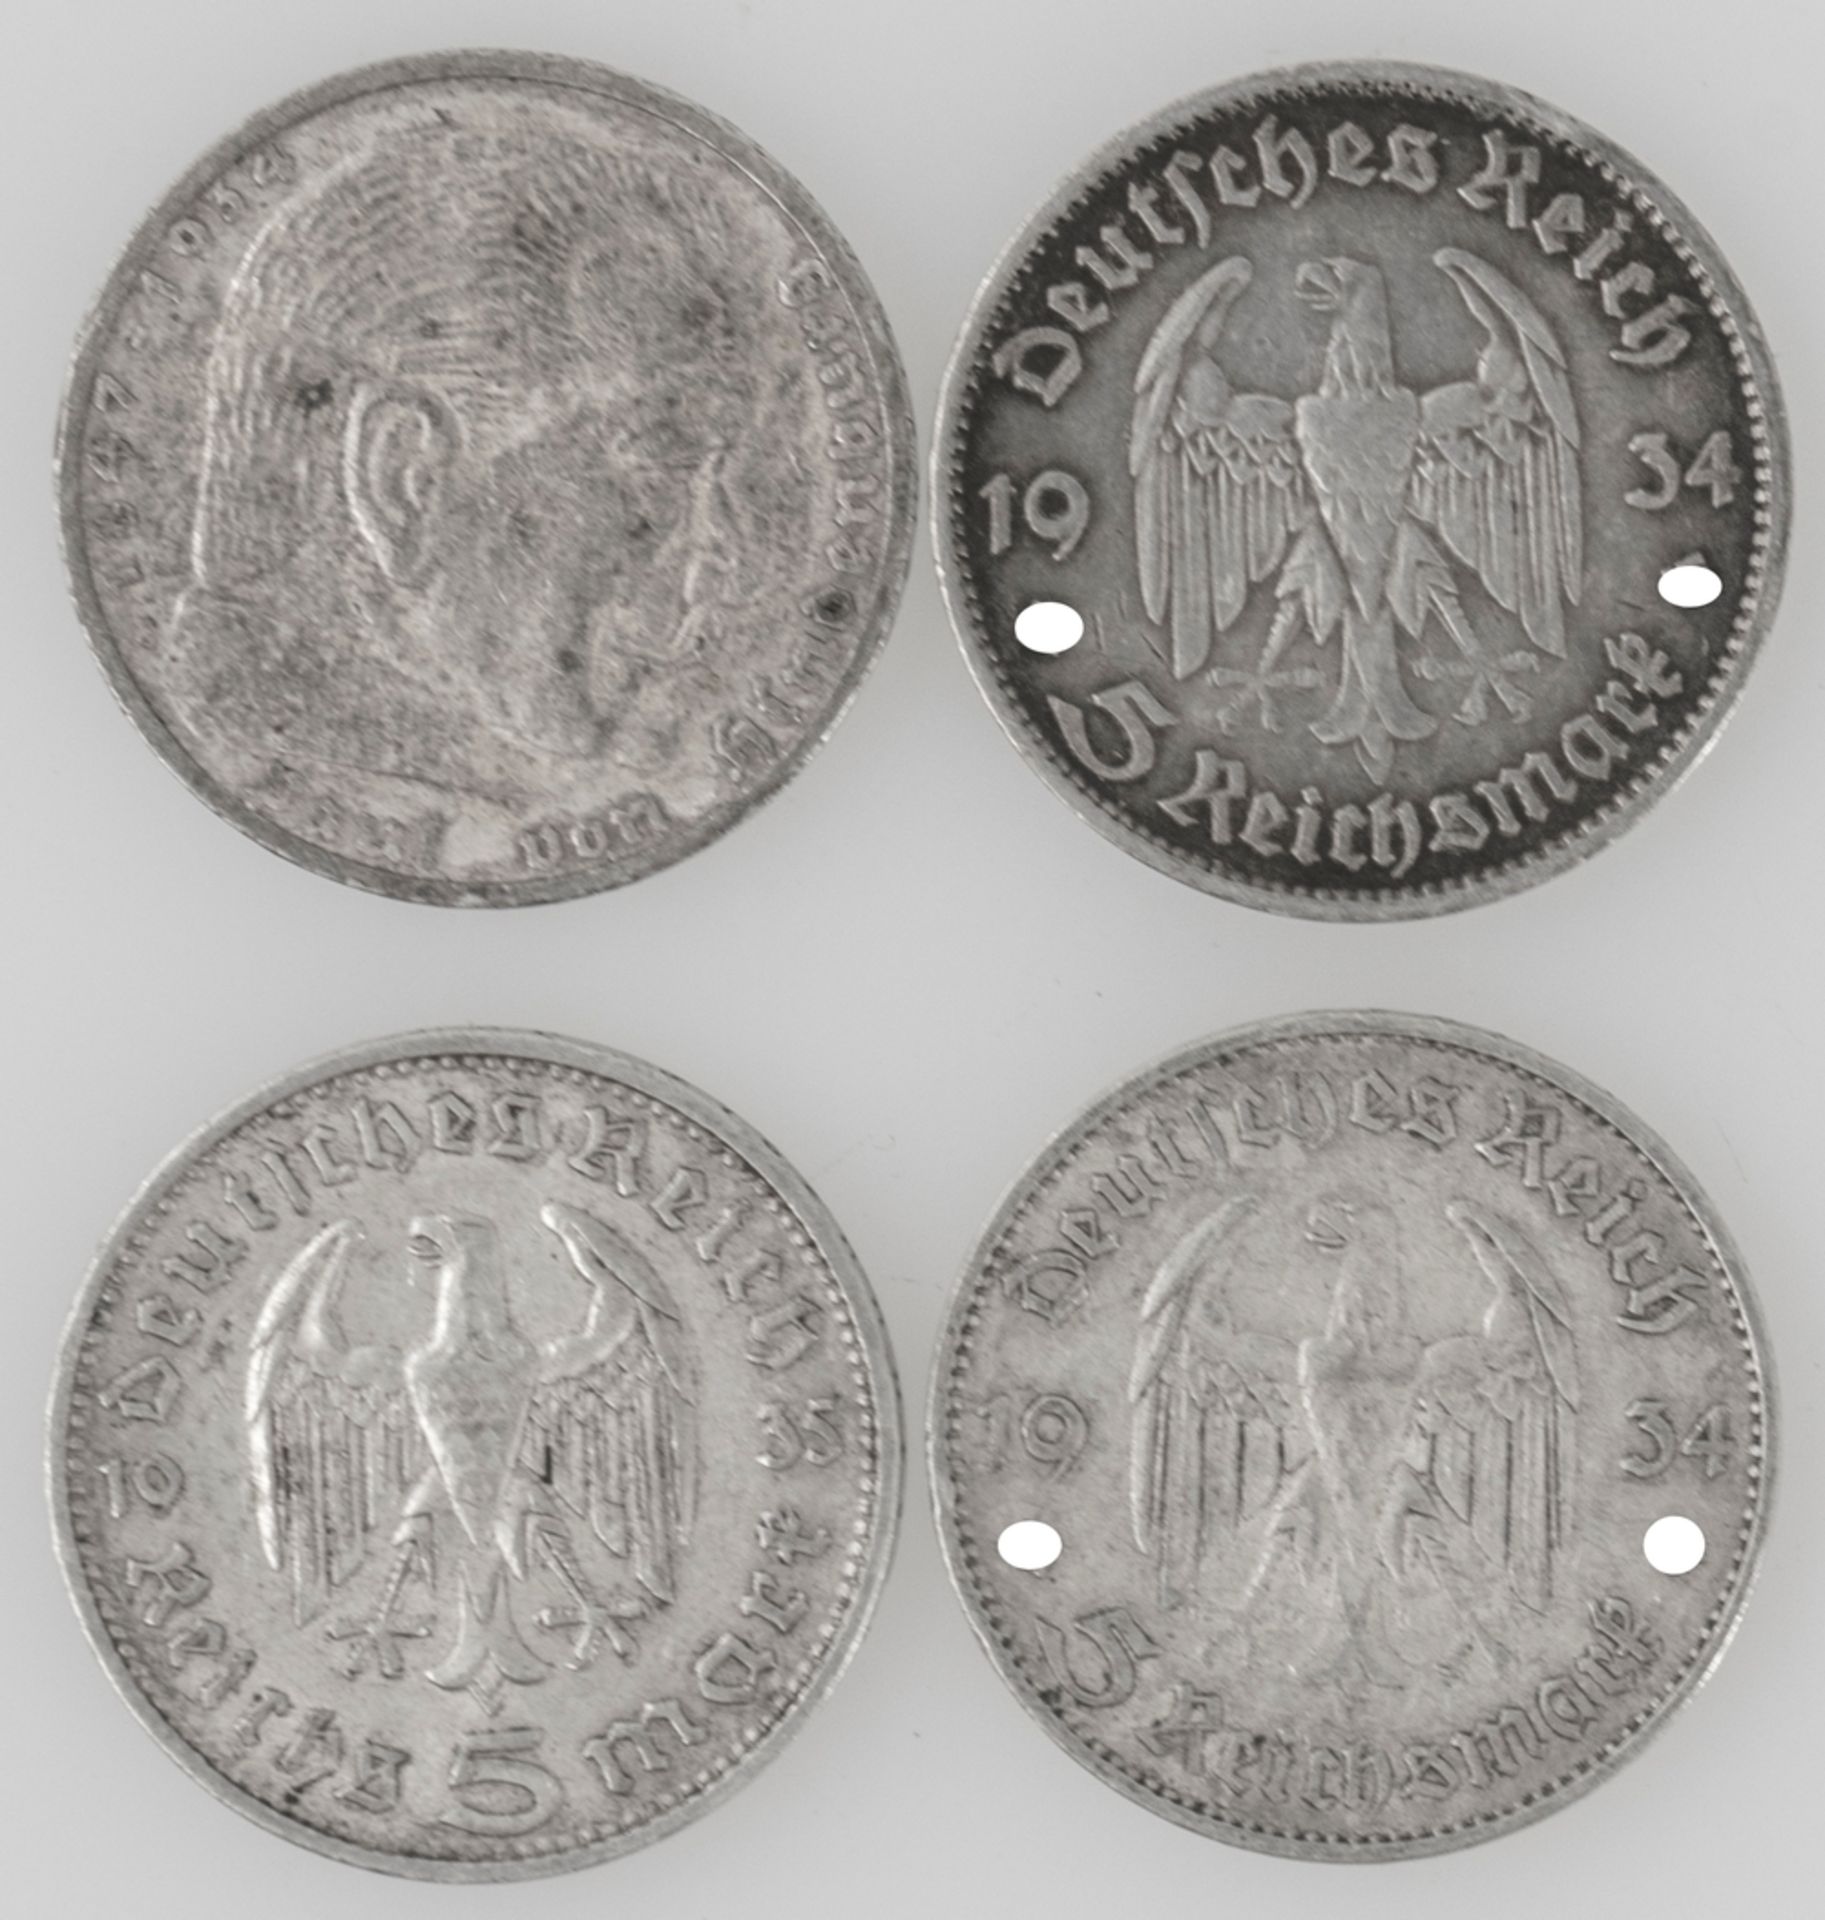 Drittes Reich 1934/36, Lot 5 Reichsmark - Silbermünzen. Erhaltung: ss. - Bild 2 aus 2